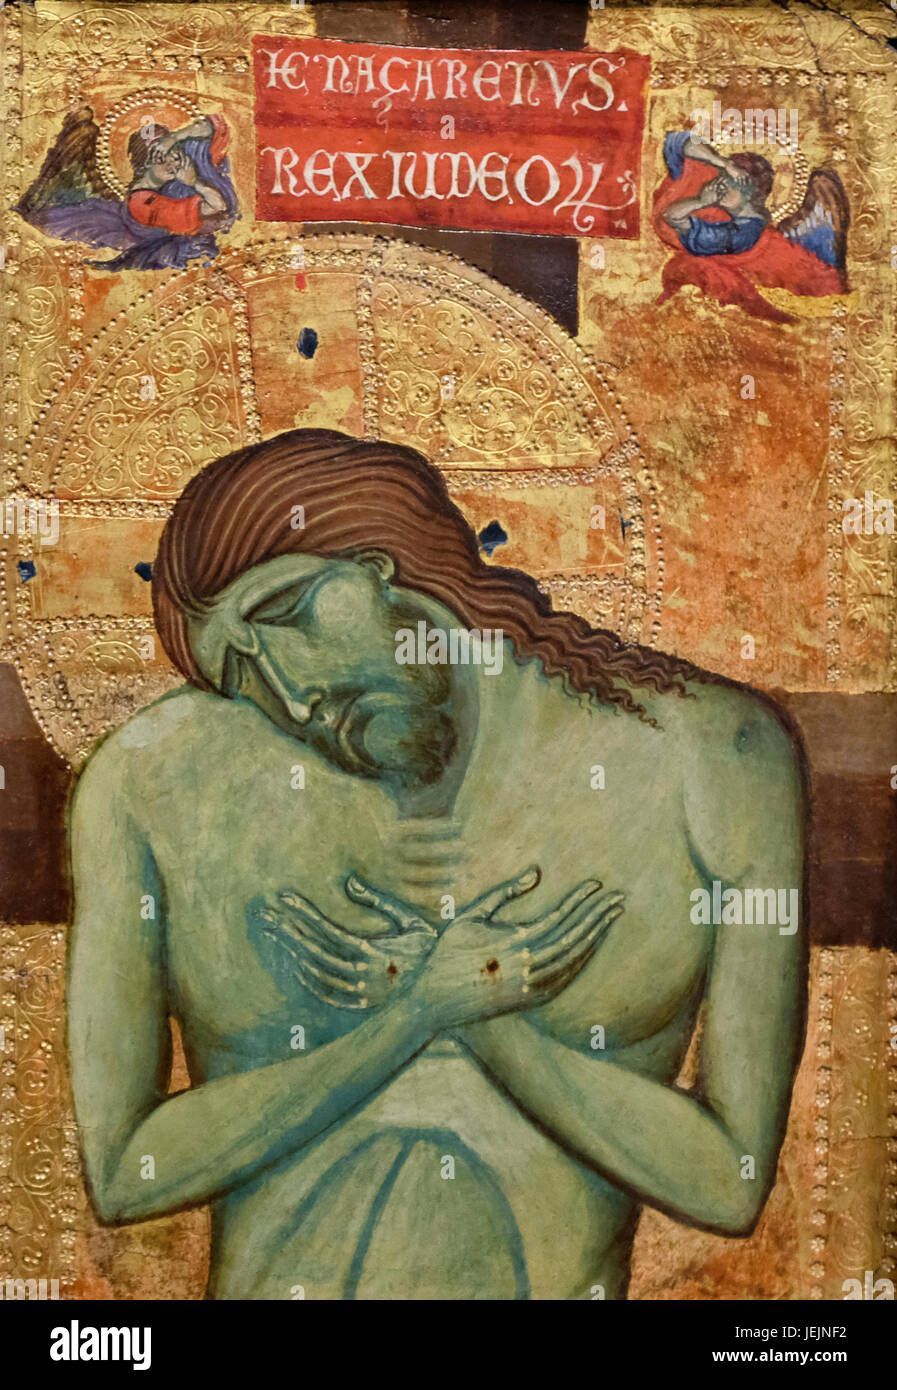 L'Homme des Douleurs - Jésus Christ crucifié - artiste inconnu - 13e siècle Banque D'Images